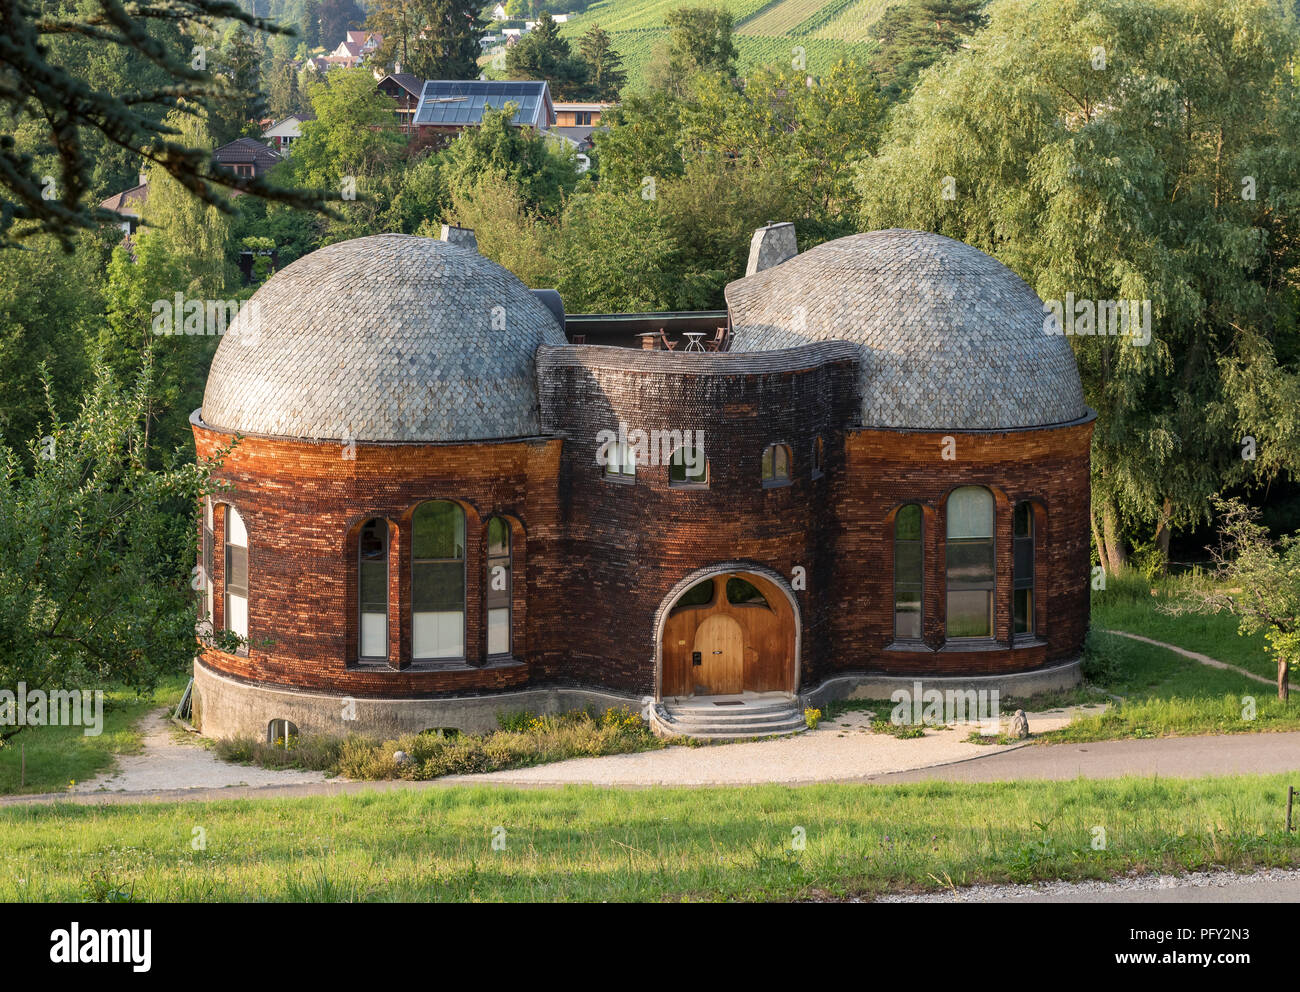 Glashaus Gebäude am Goetheanum, Dornach, Schweiz Stockfotografie - Alamy